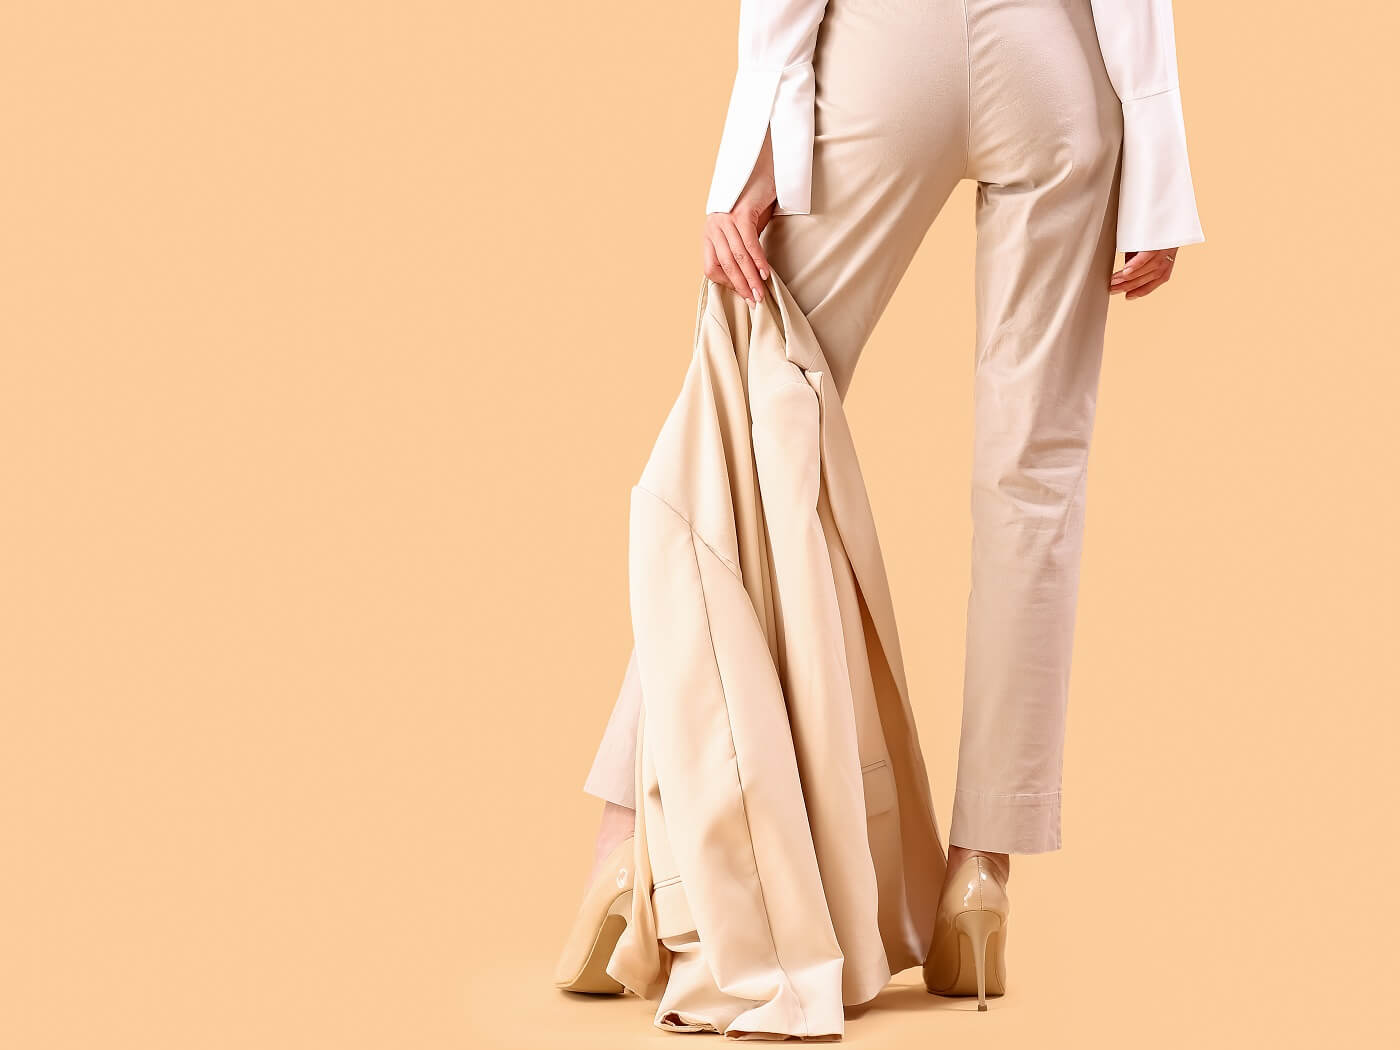 Atrybut elegancji w biznesie - jak nosić kobiecy garnitur